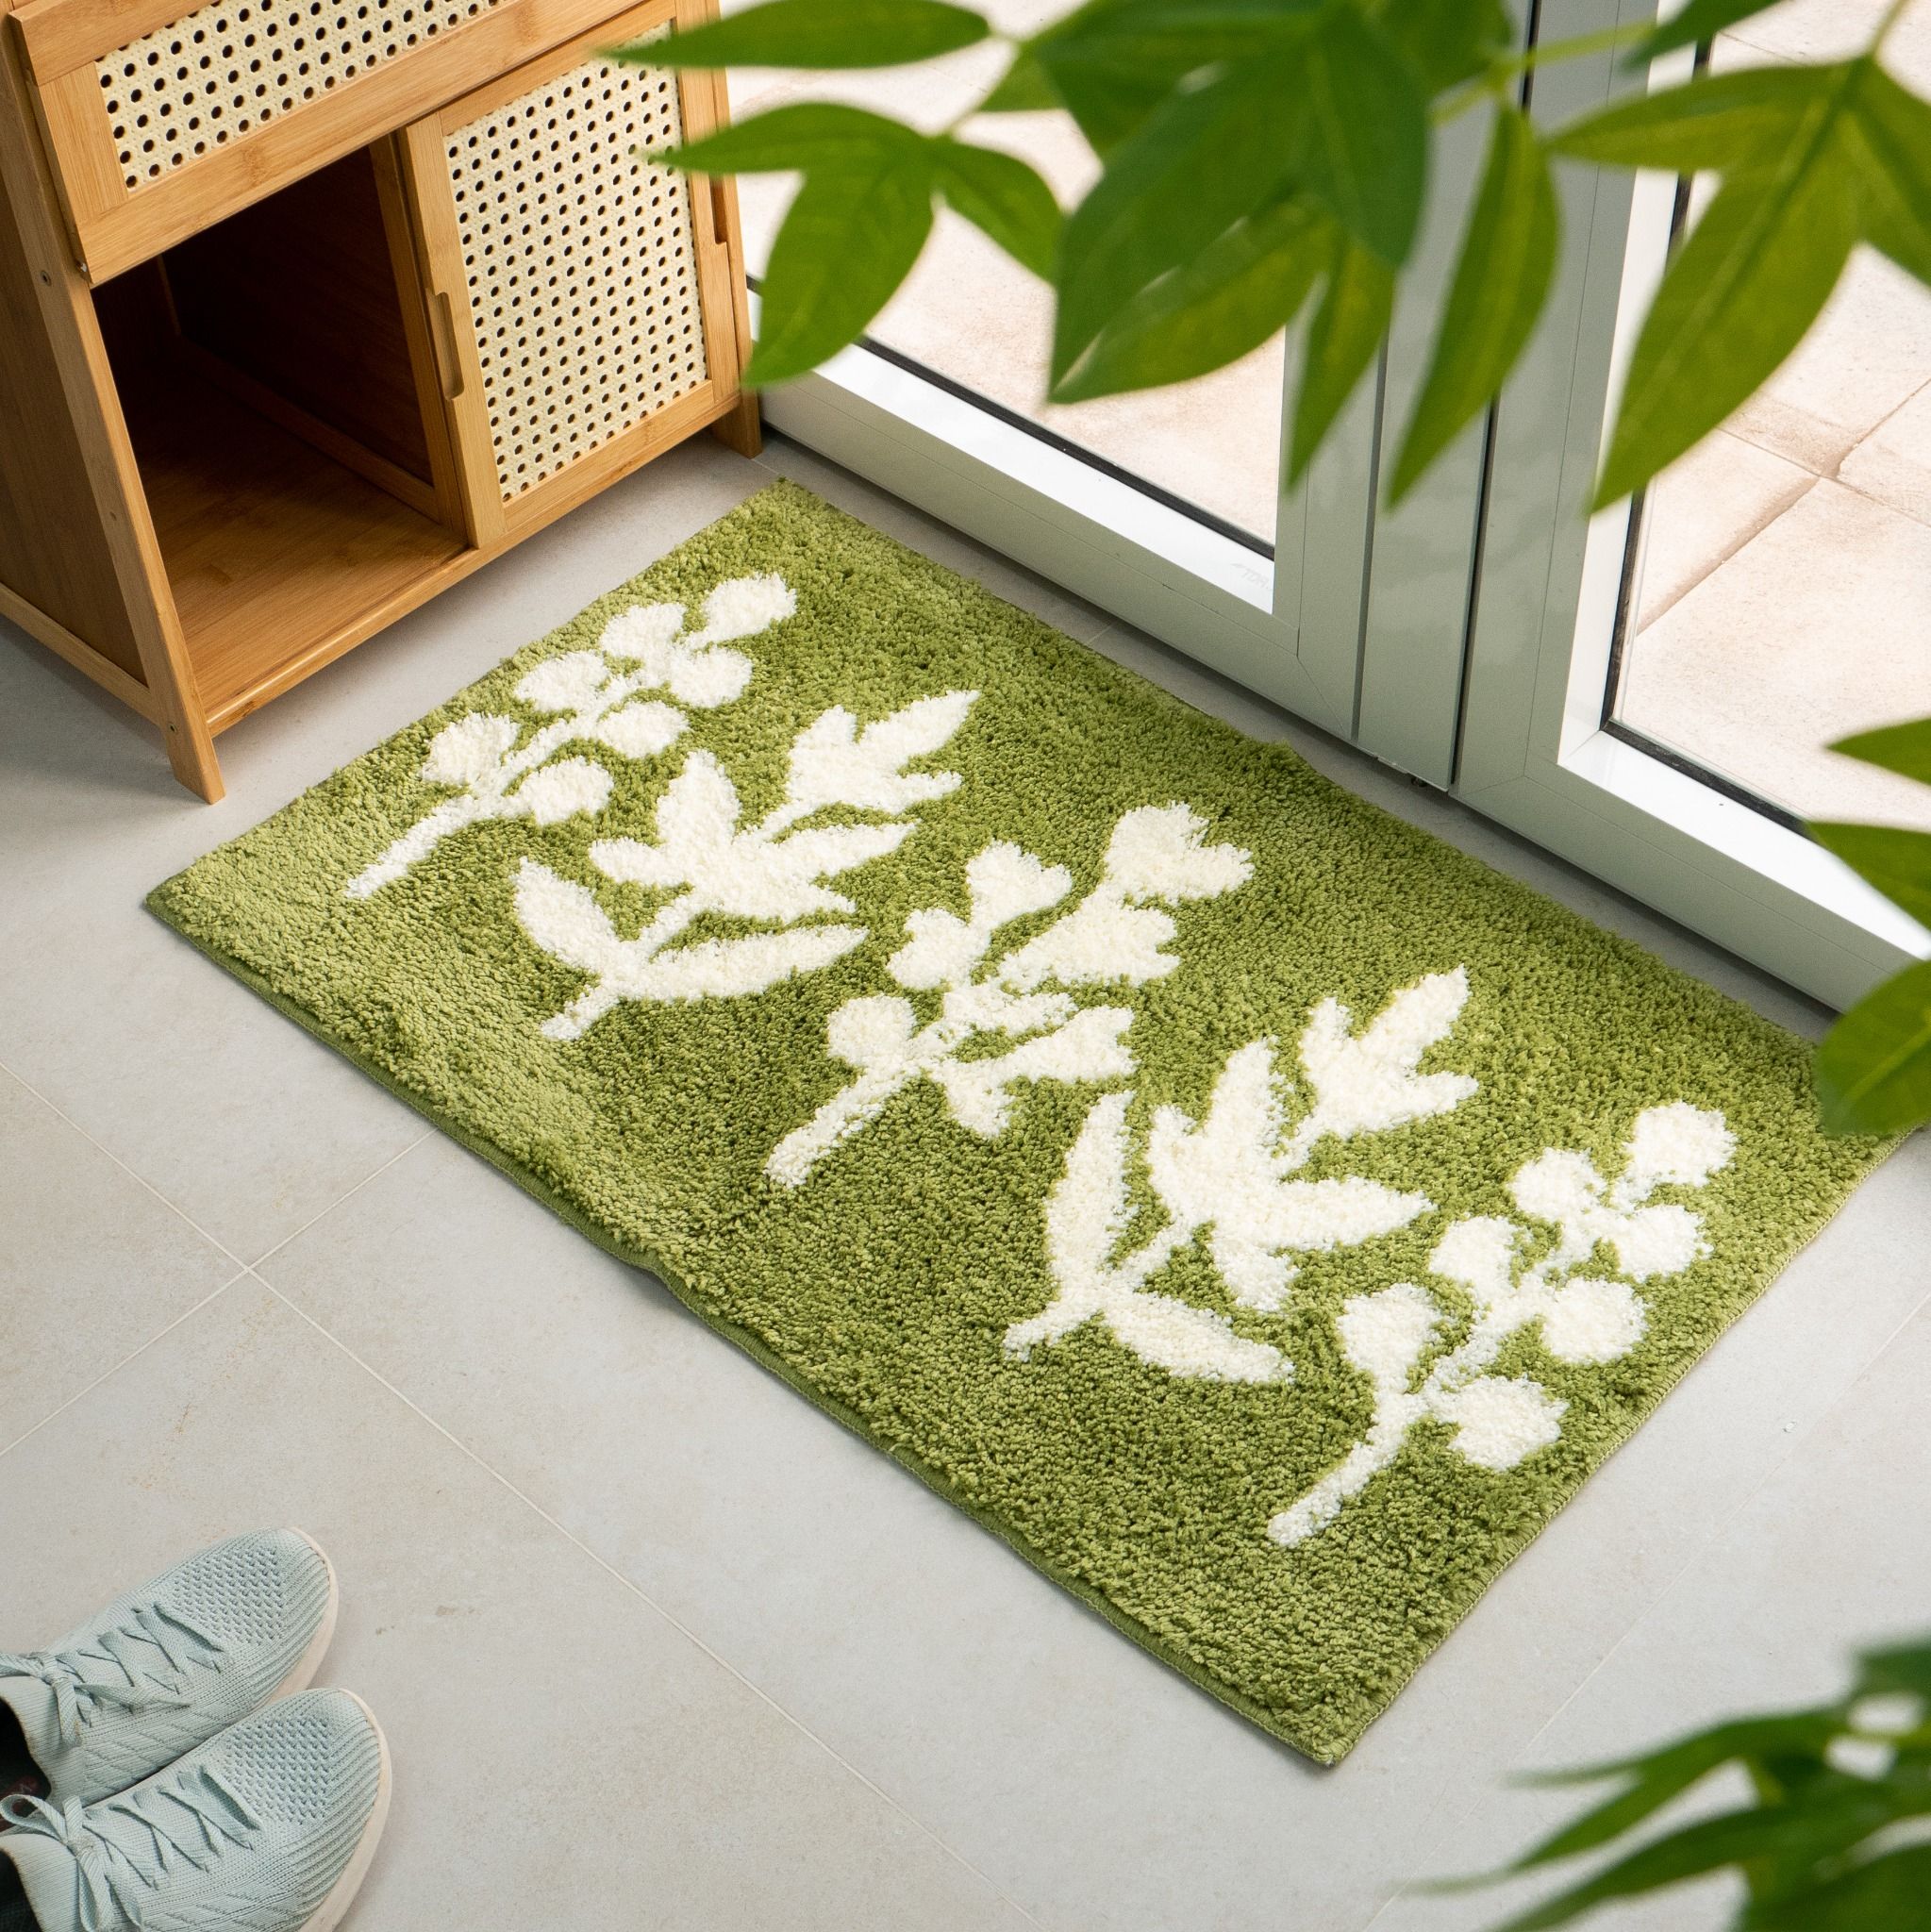 Sử dụng thảm trải nhà có thể hấp thụ nguồn năng lượng tích cực cho gia chủ